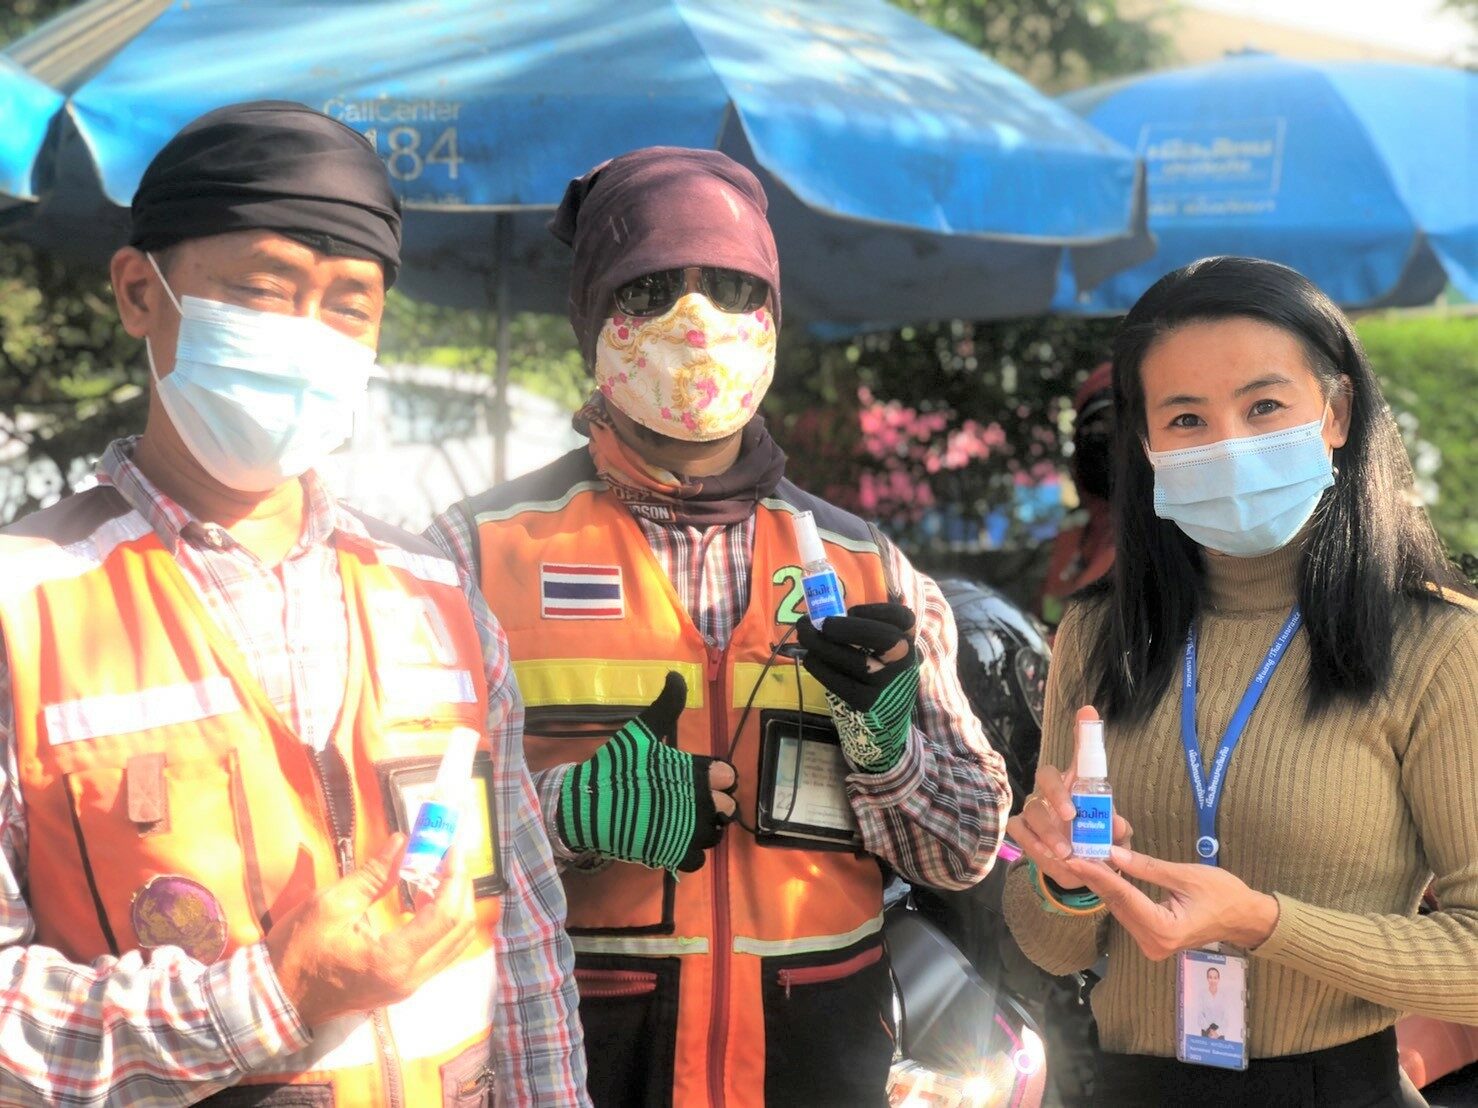 “มาดามแป้ง” ลุยภารกิจอาสากล้าใหม่เมืองไทยฯ ช่วยวิกฤติโควิด-19 ของประเทศ